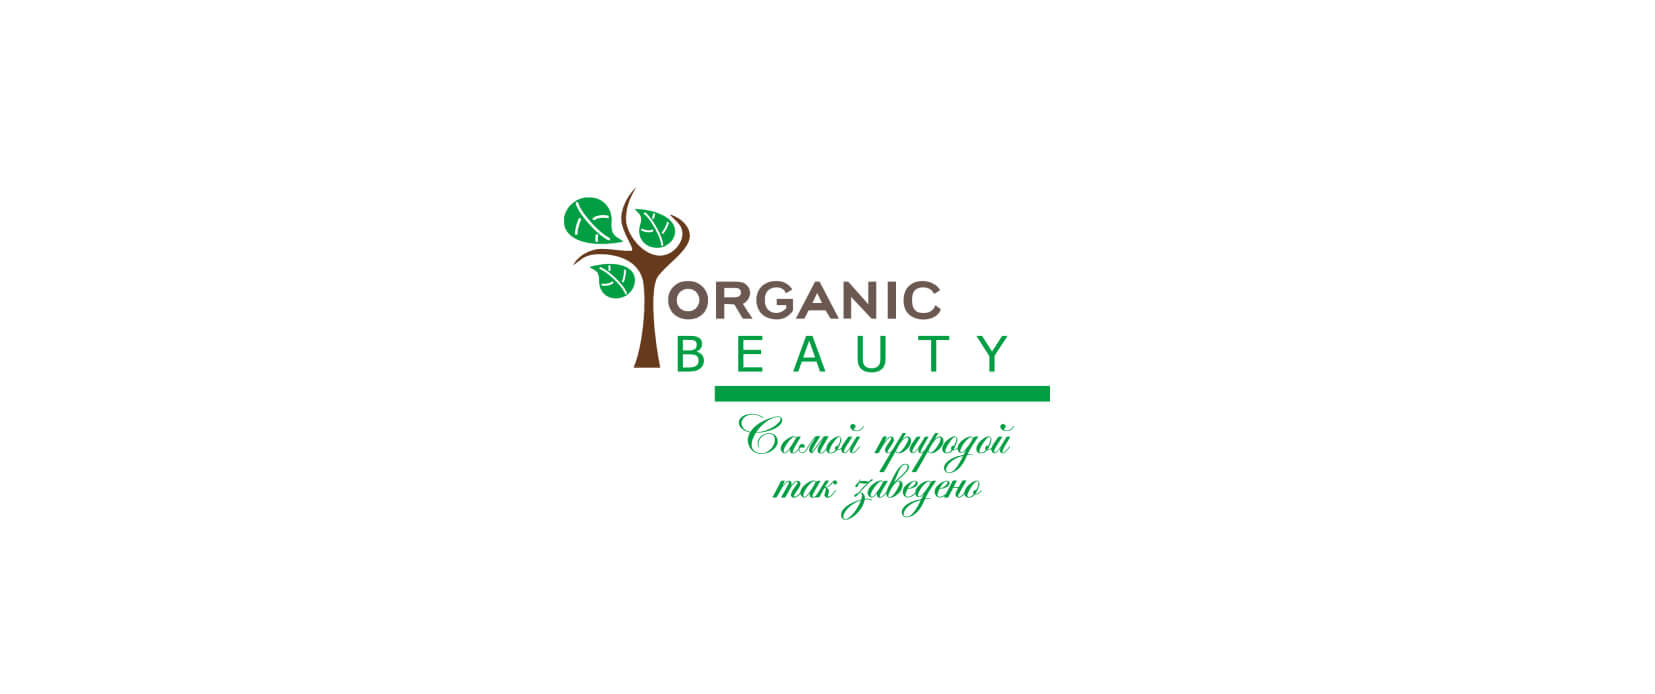 Organic Beauty – магазины органической и натуральной косметики